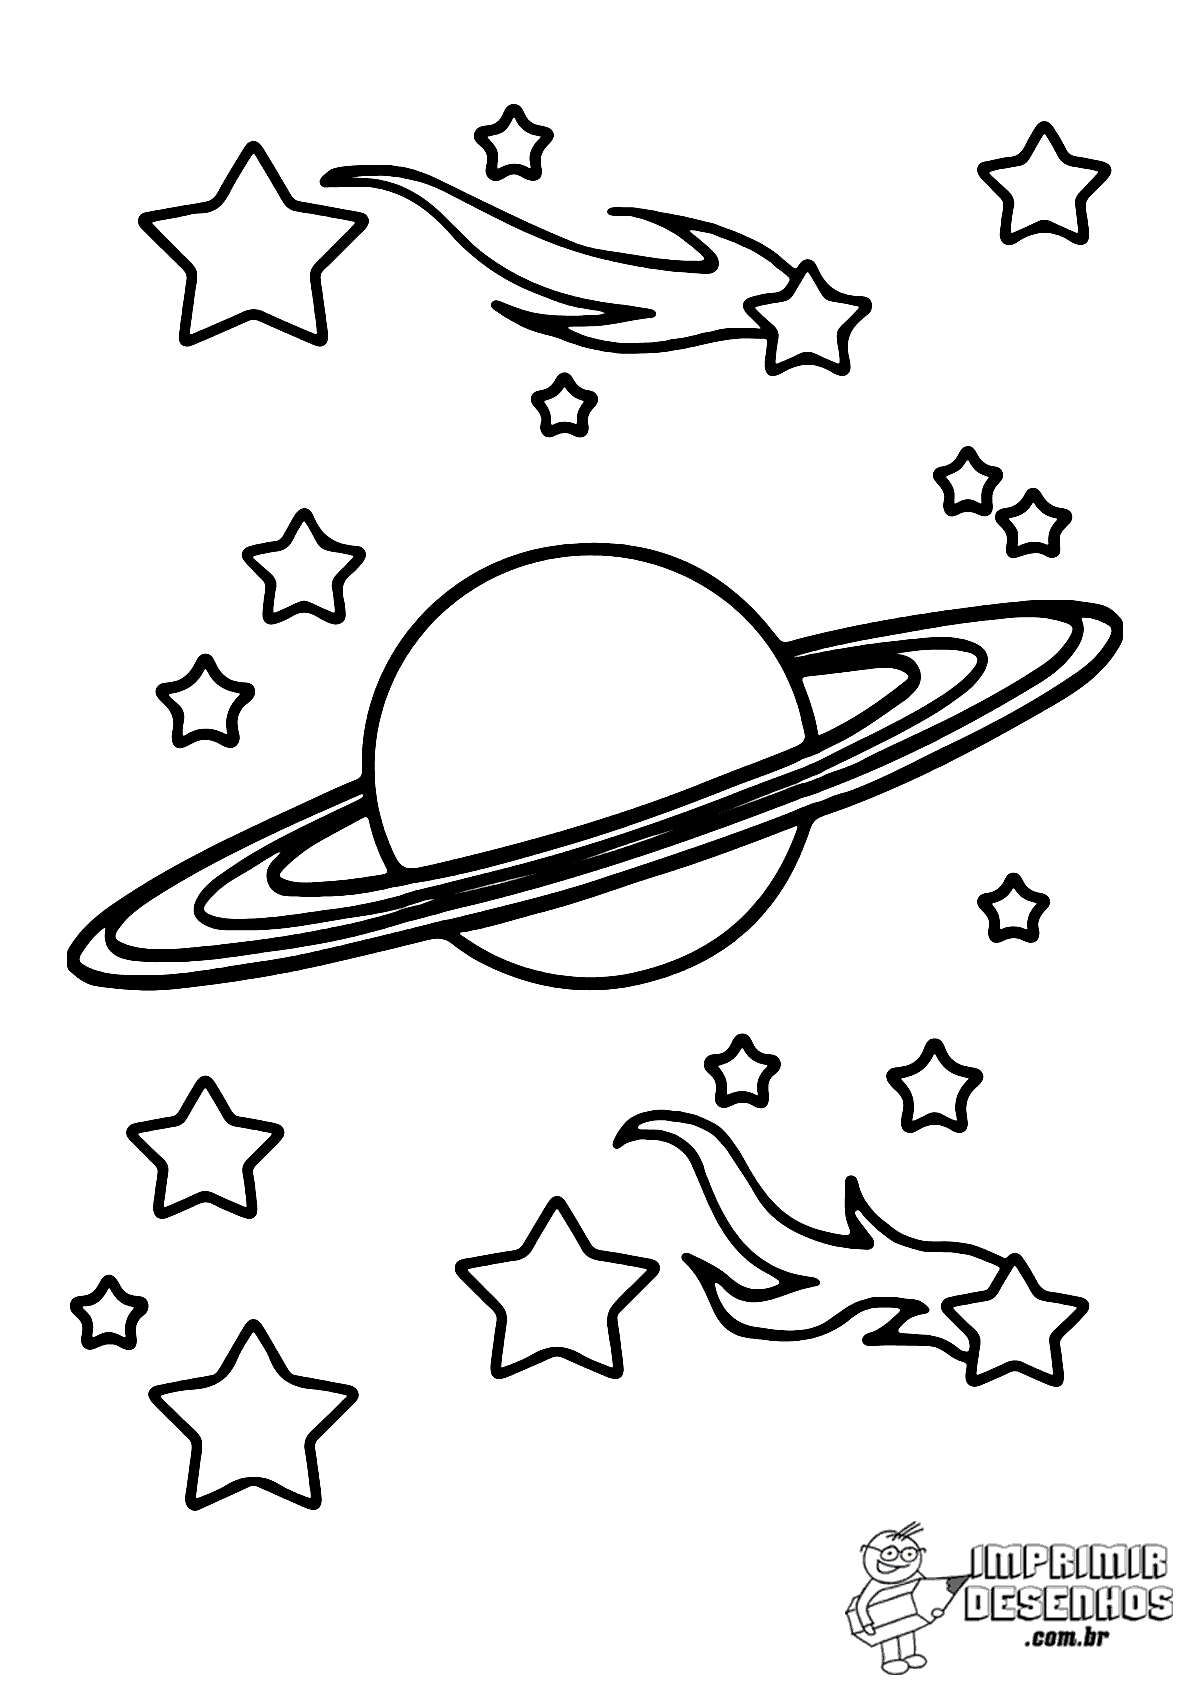 Планеты картинки для детей раскраски. Космос раскраска для детей. Раскраска. В космосе. Рисунок на тему космос трафарет. Раскраска космос и планеты для детей.